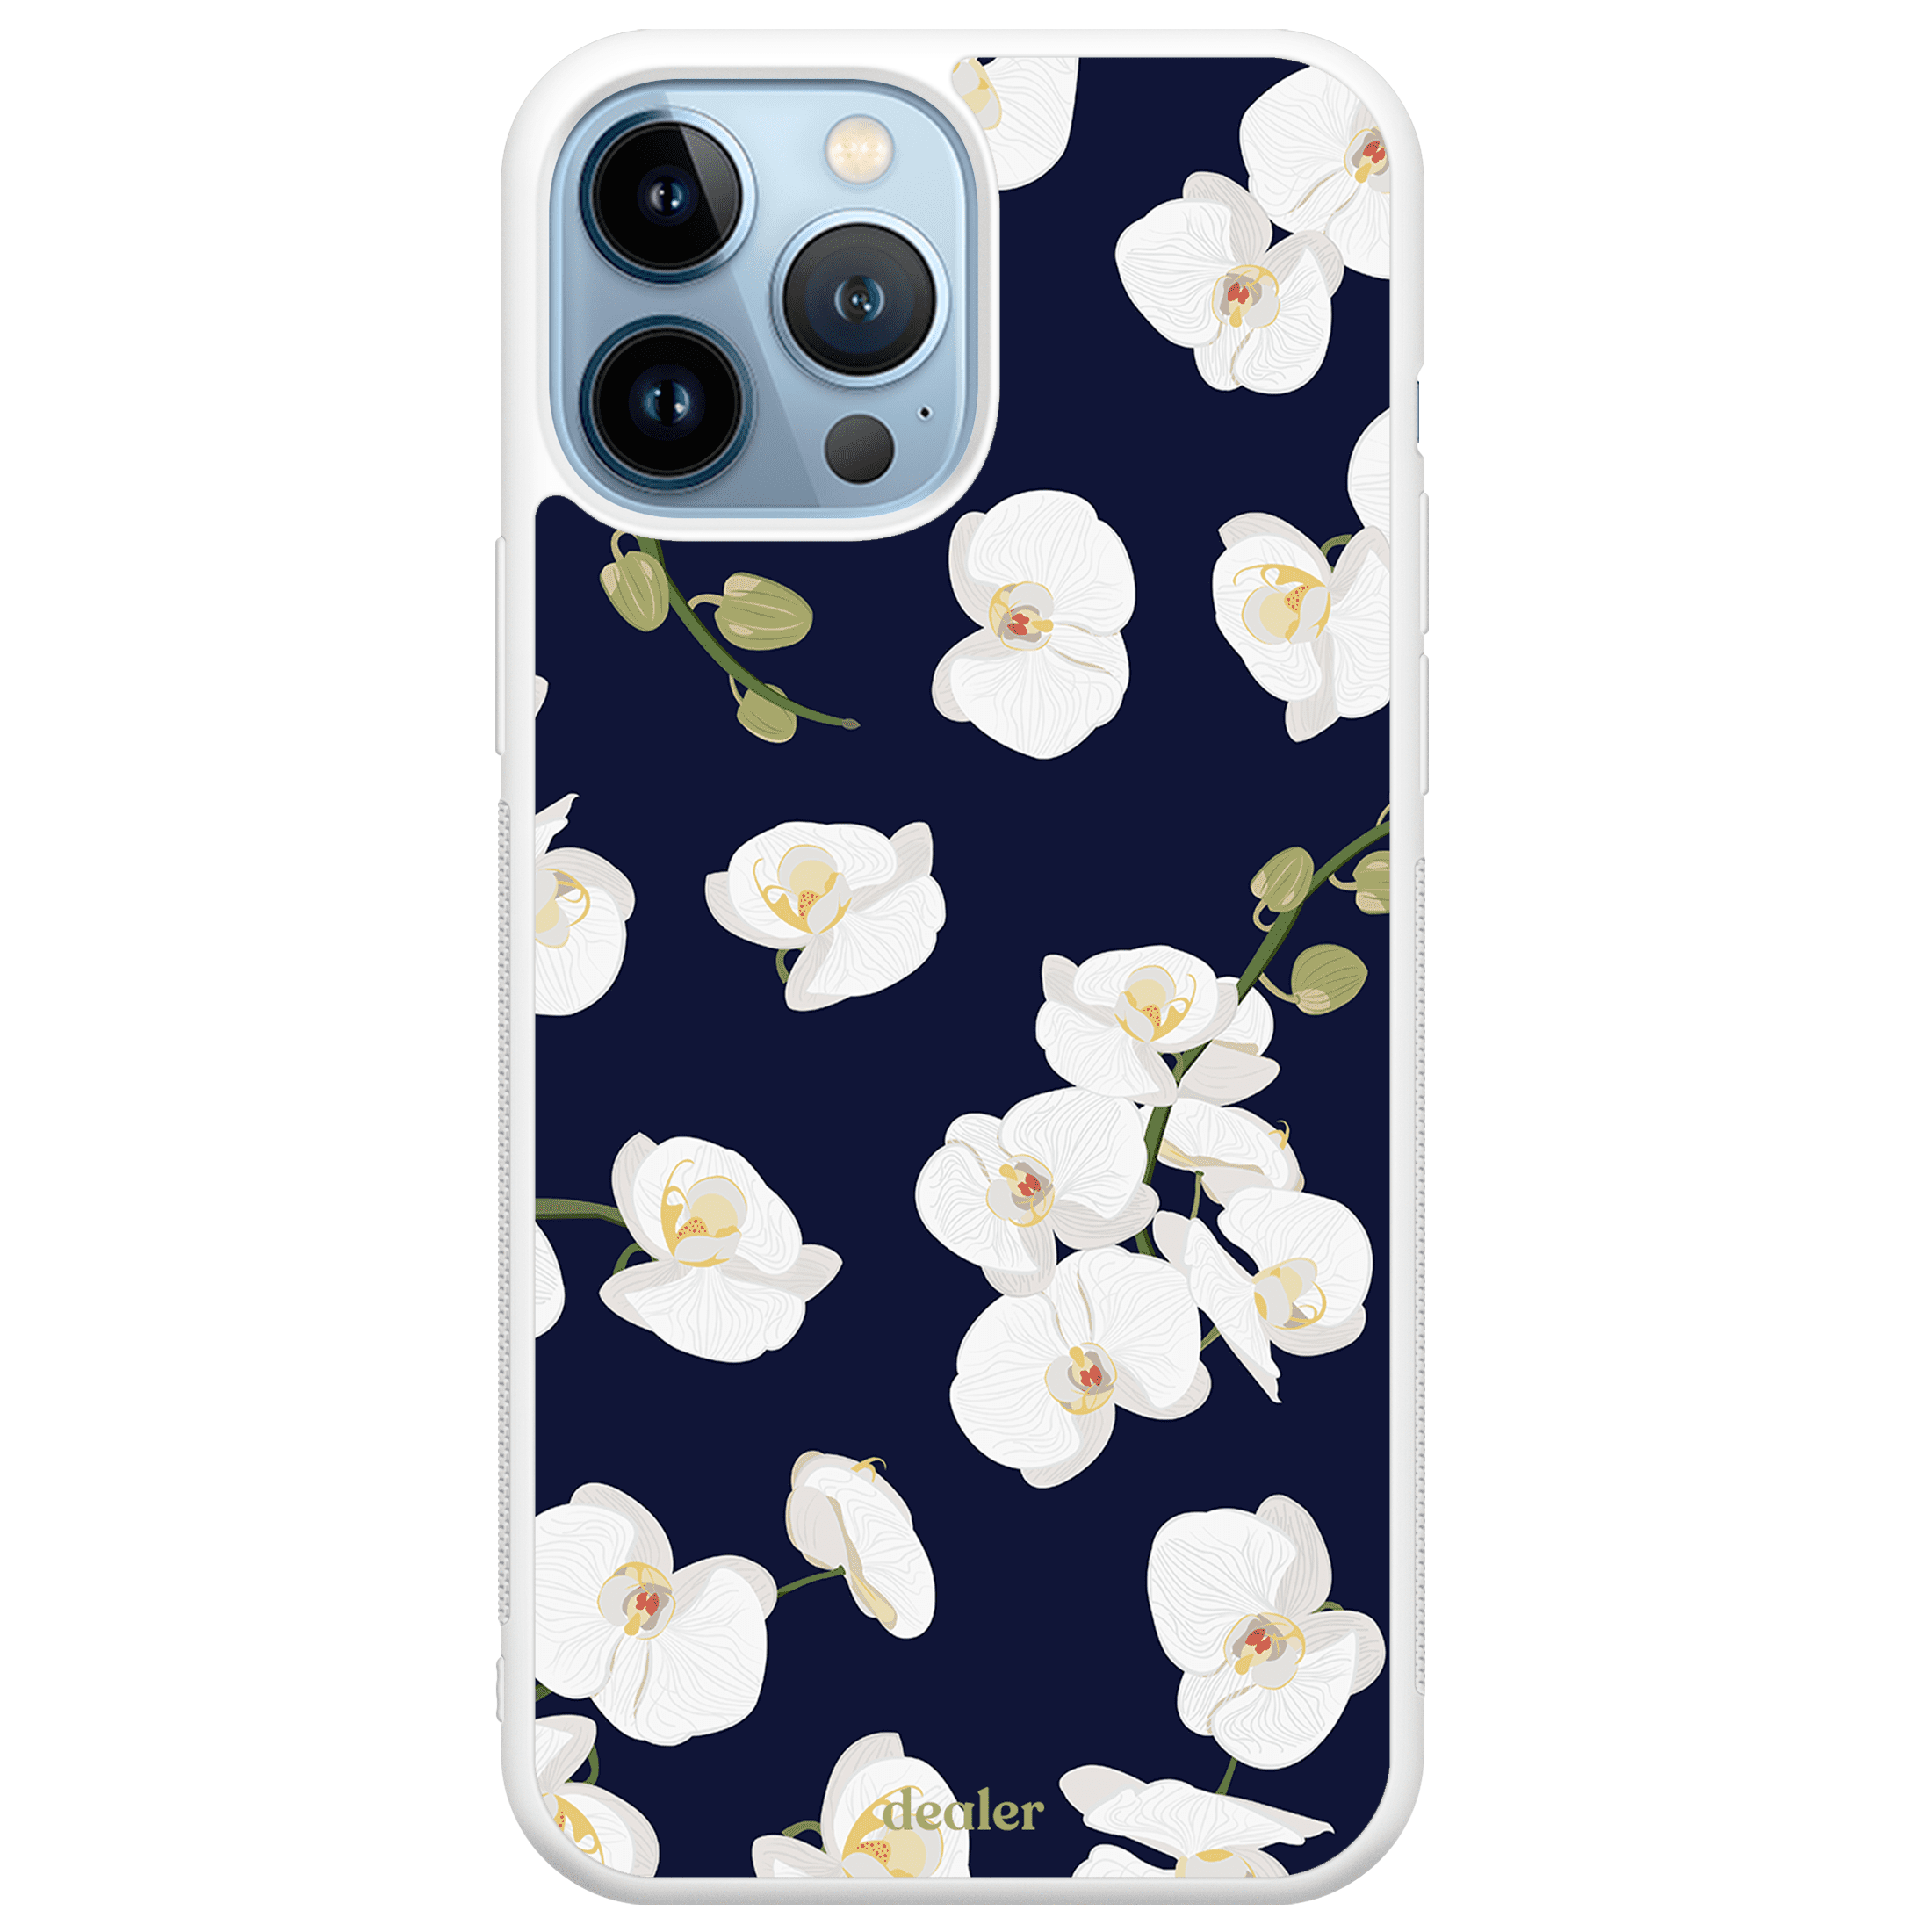 Coque de téléphone avec des fleurs blanches, coque florale en silicone renforcé Dealer de coque